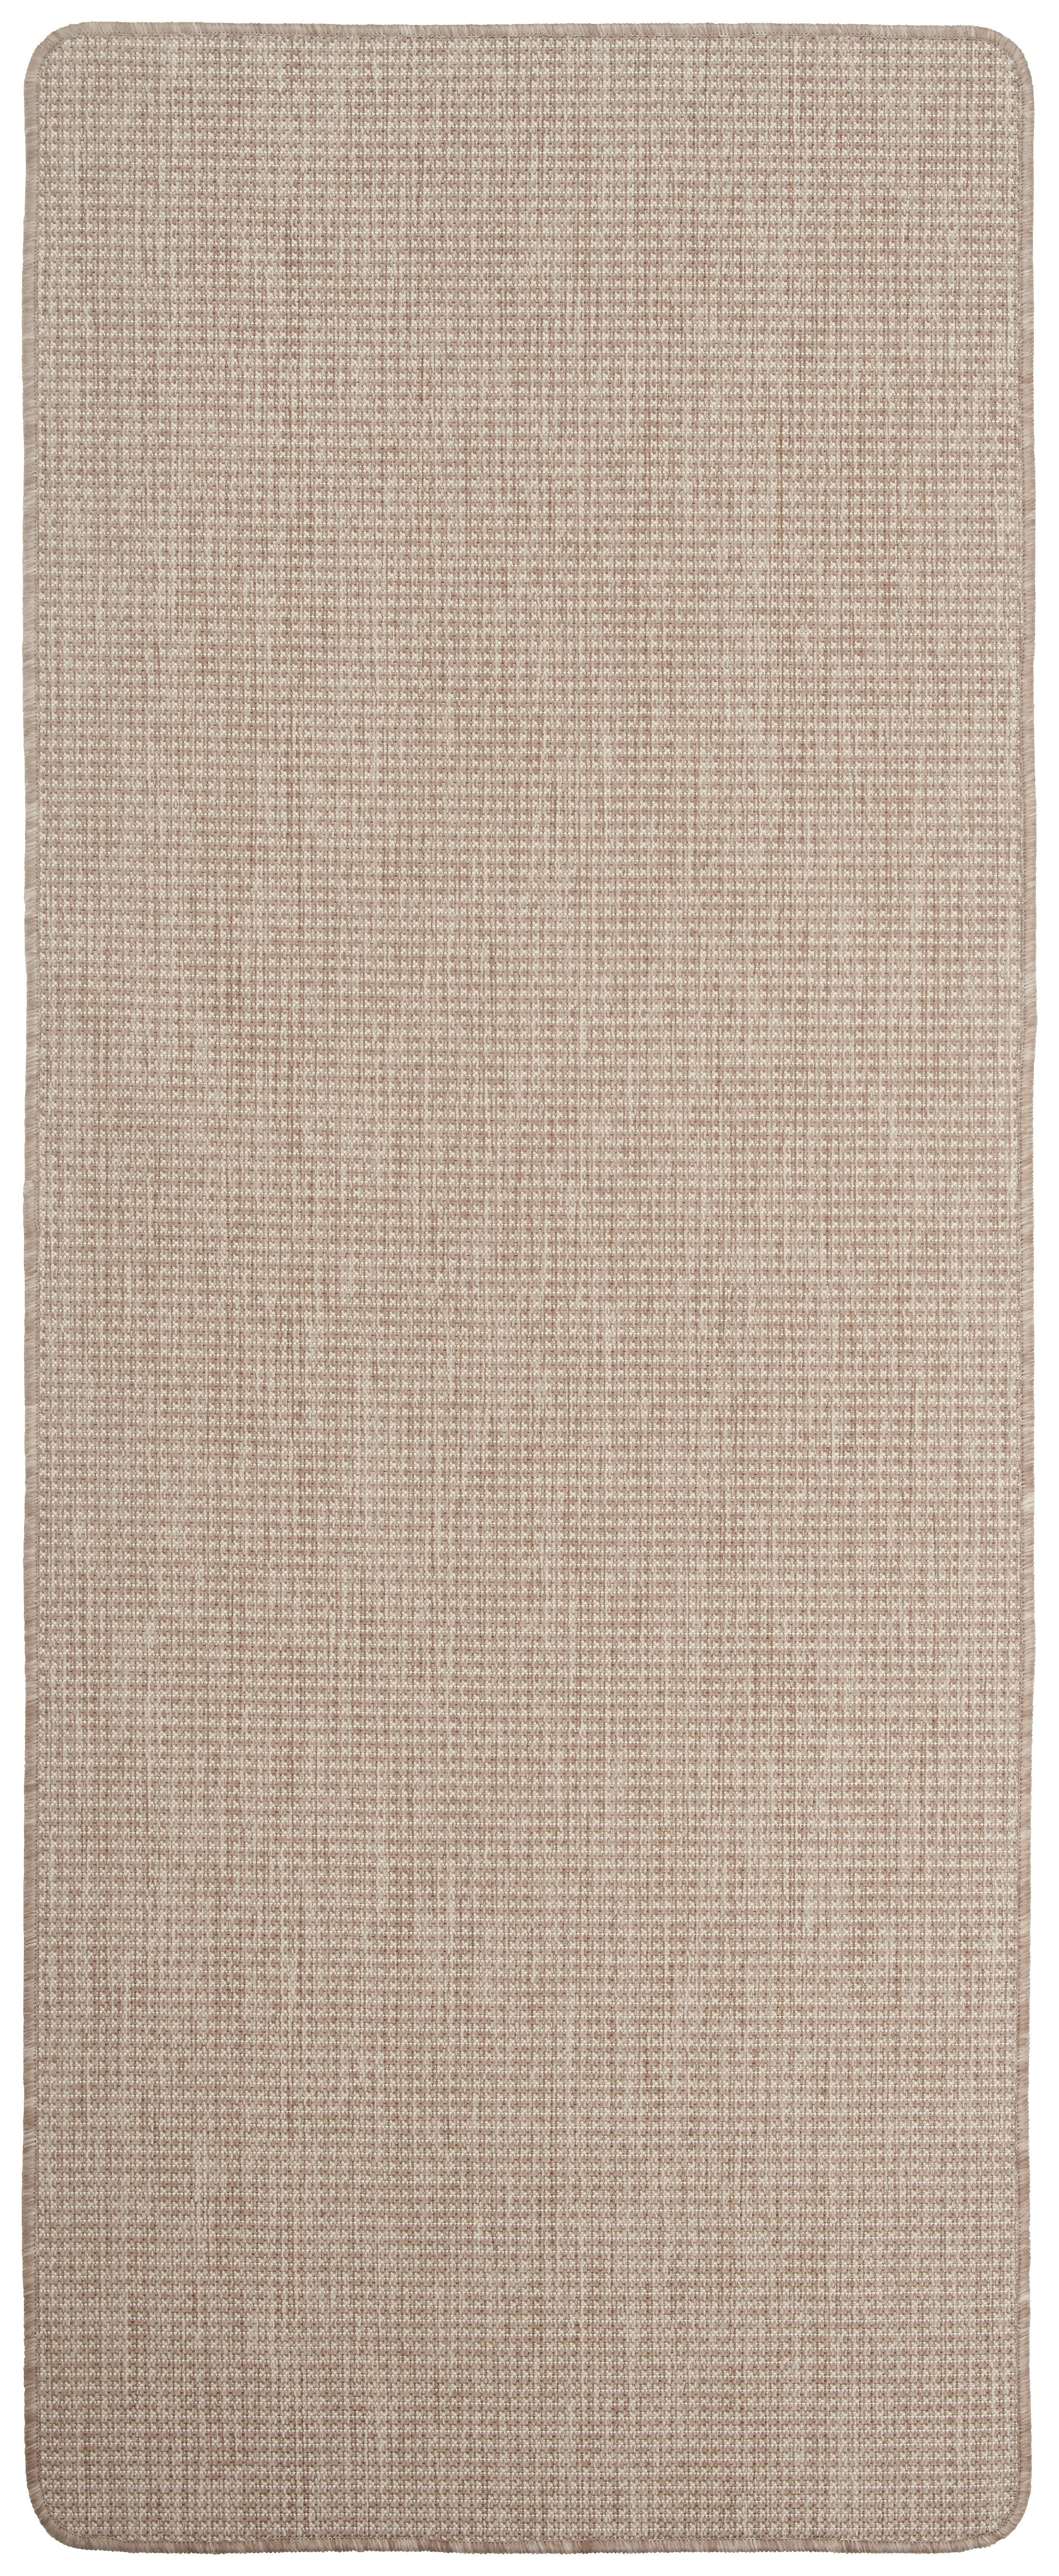 FLACHWEBETEPPICH 120/170 cm Country  - Beige, KONVENTIONELL, Textil (120/170cm) - Boxxx